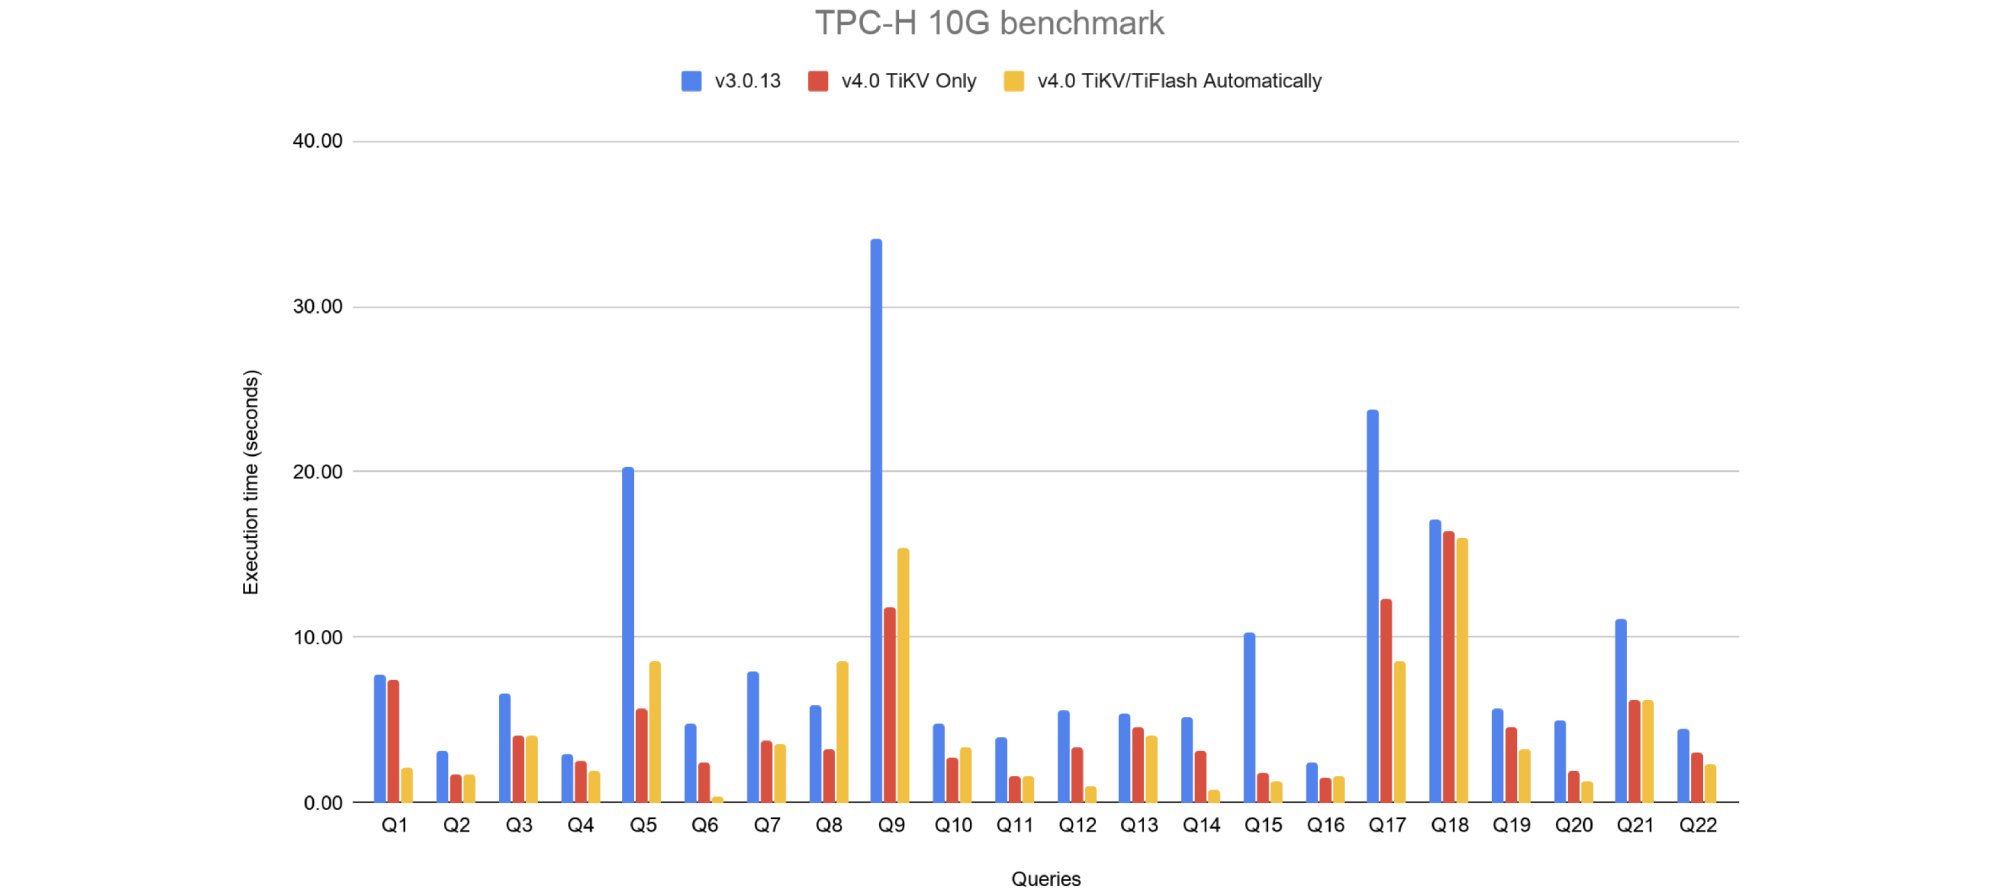 TiDB 3.0.13 vs. 4.0 for TPC-H benchmarks